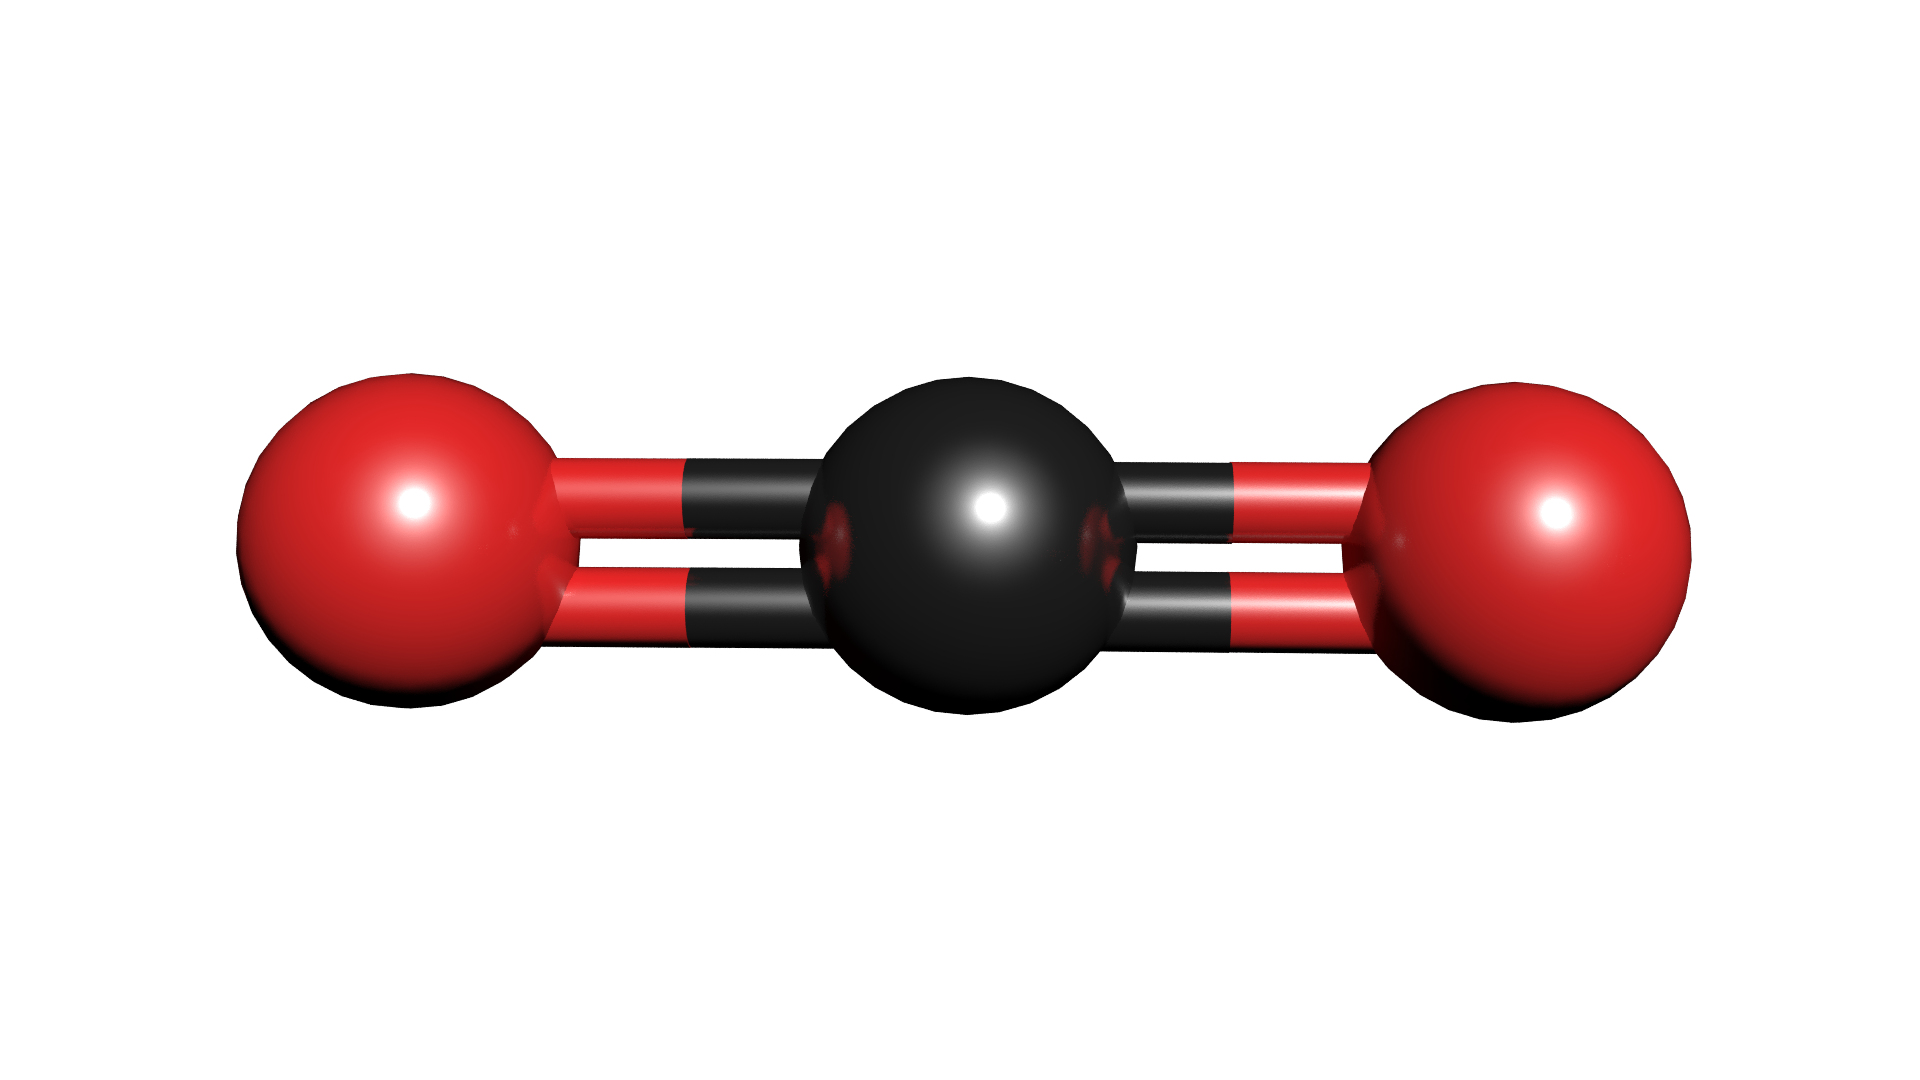 3D Co2 Carbon Dioxide Model - TurboSquid 1423498